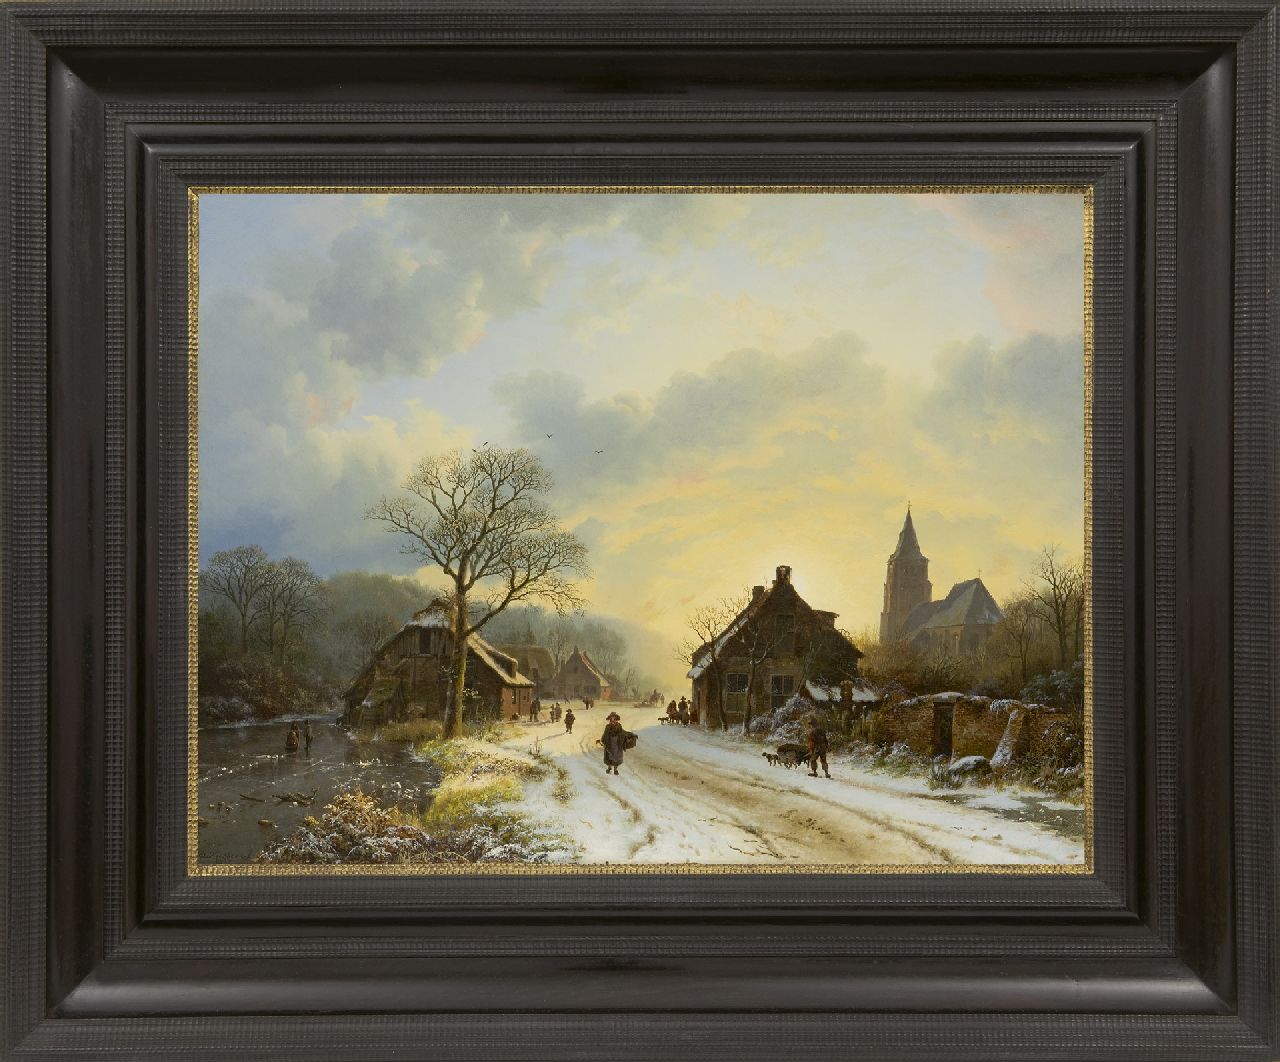 Koekkoek B.C.  | Barend Cornelis Koekkoek, Nederrijns winterlandschap met kerkje, geïnspireerd op de dorpskerk te Aerdt, olieverf op doek 39,7 x 52,4 cm, gesigneerd linksonder en gedateerd 1837